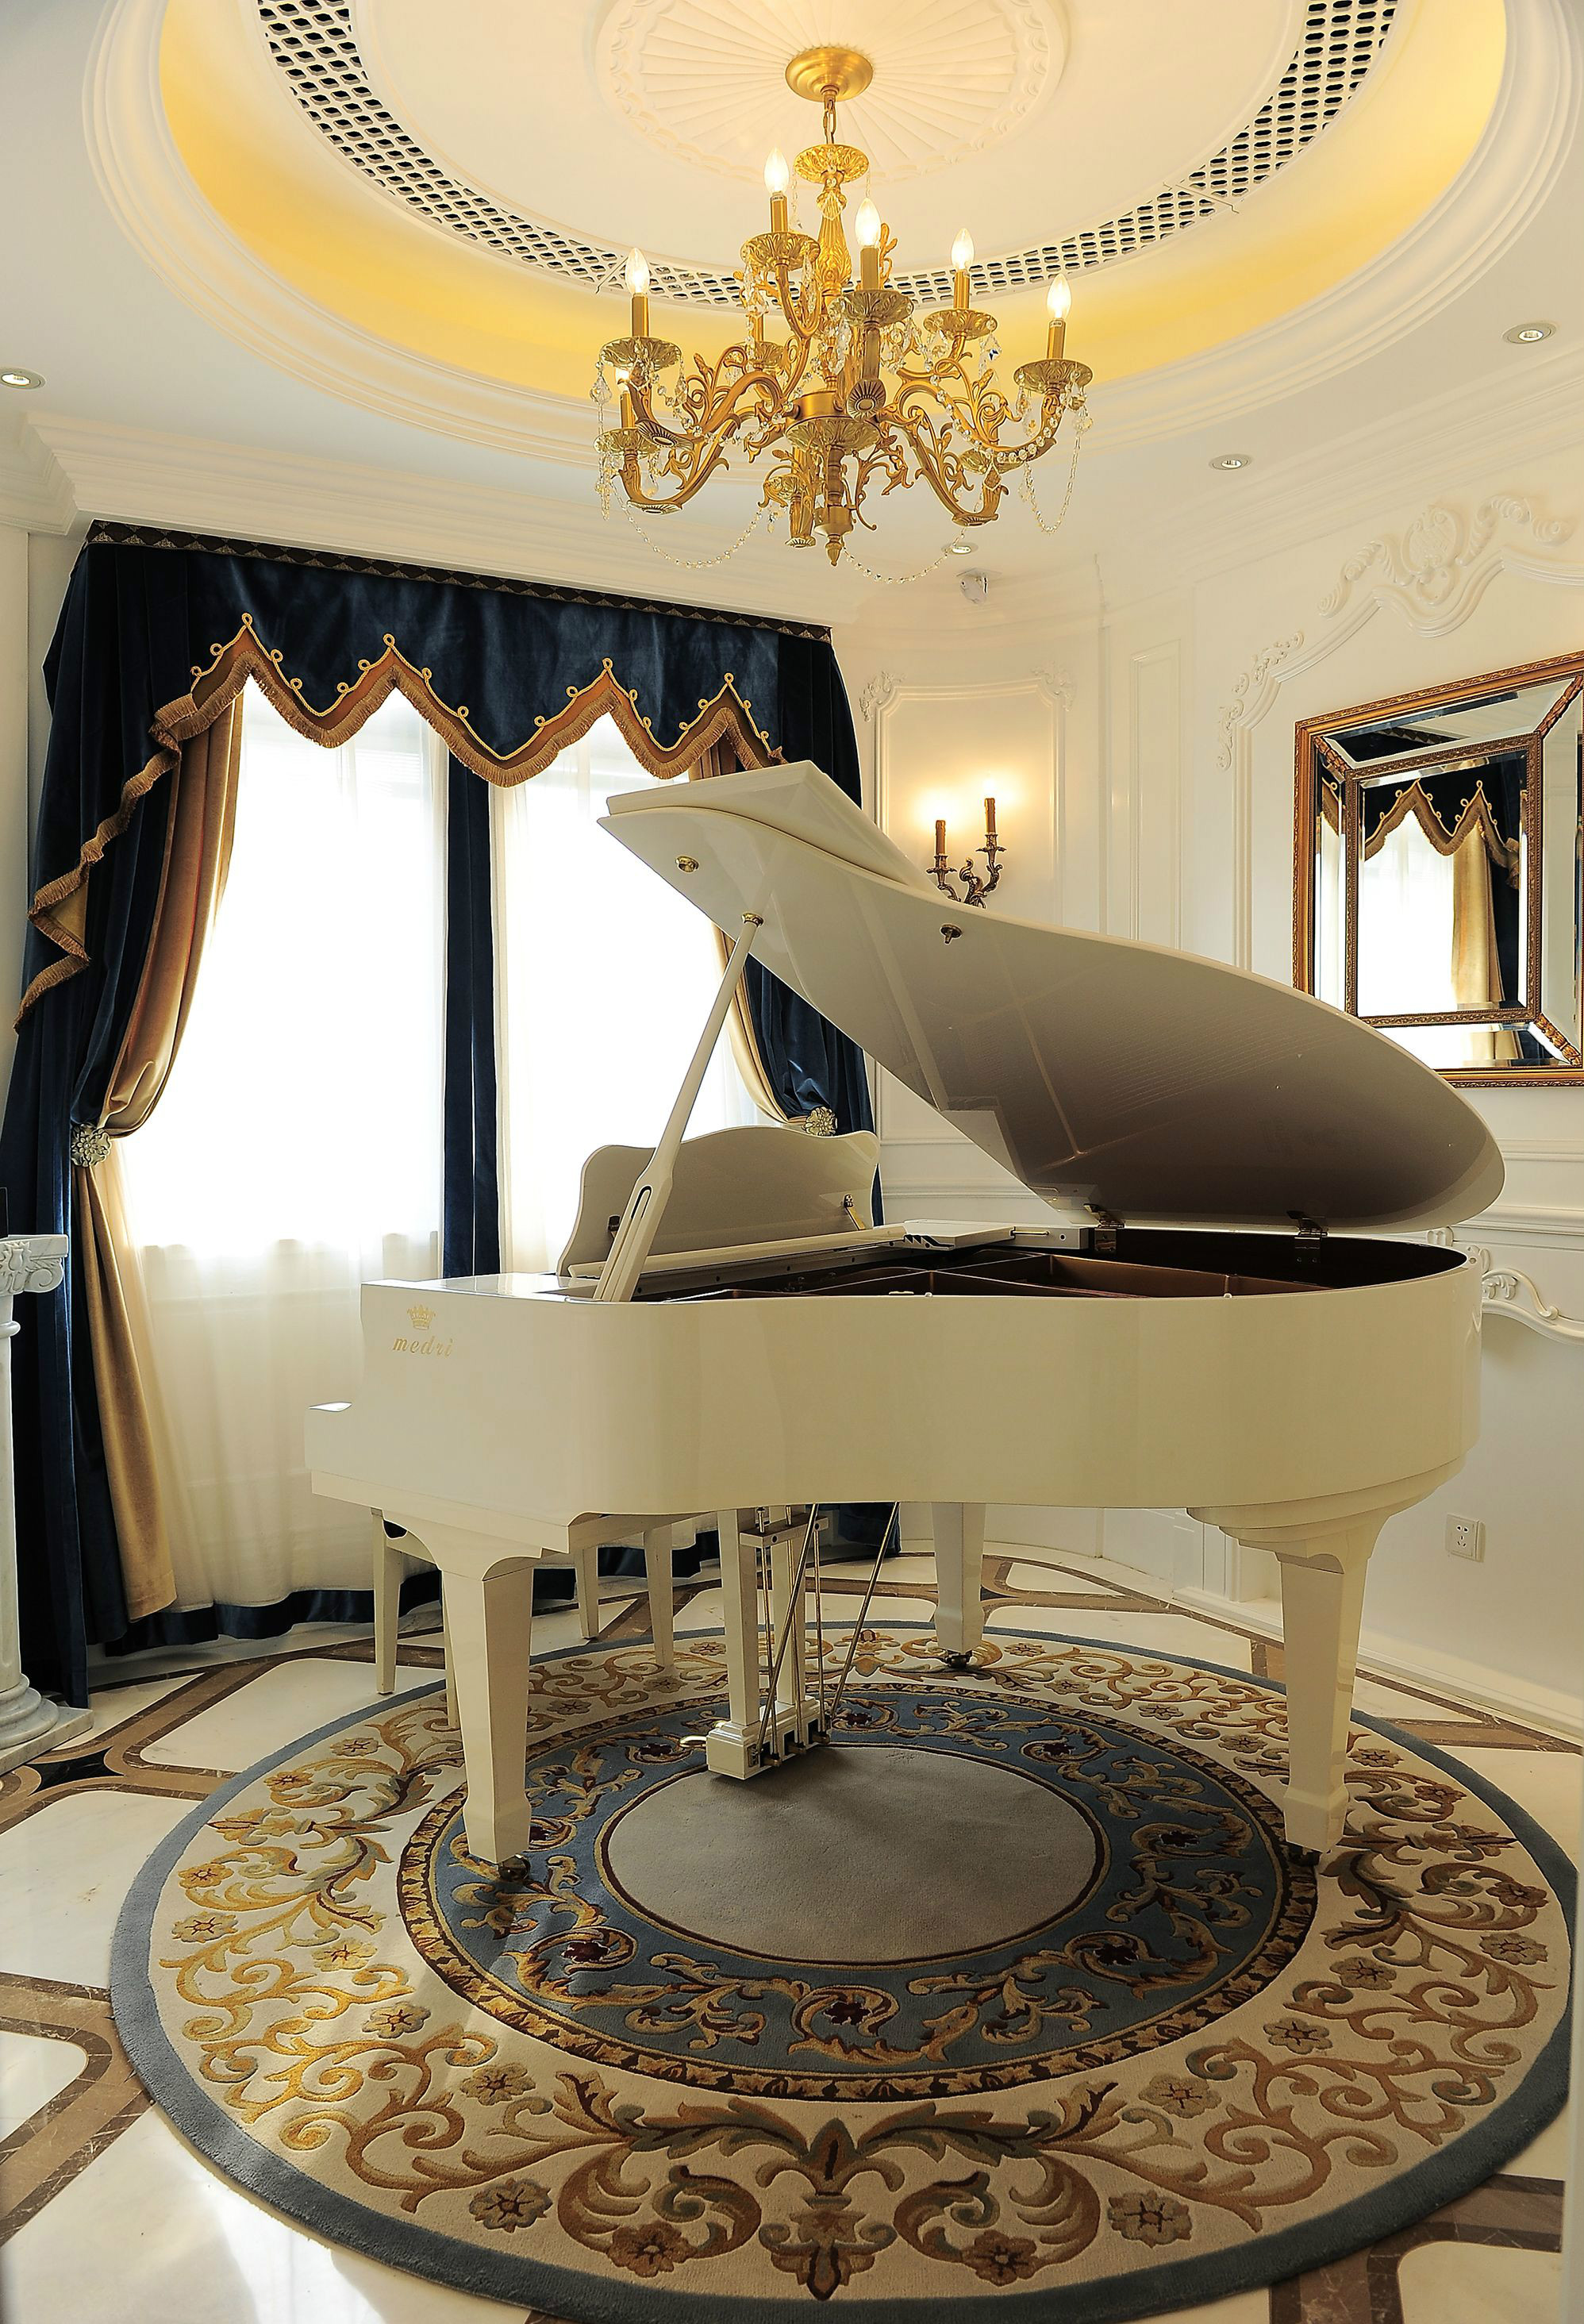 欧尔雅 三角钢琴OA-275 弹奏舒适 震撼效果 适合大型音乐厅使用-阿里巴巴